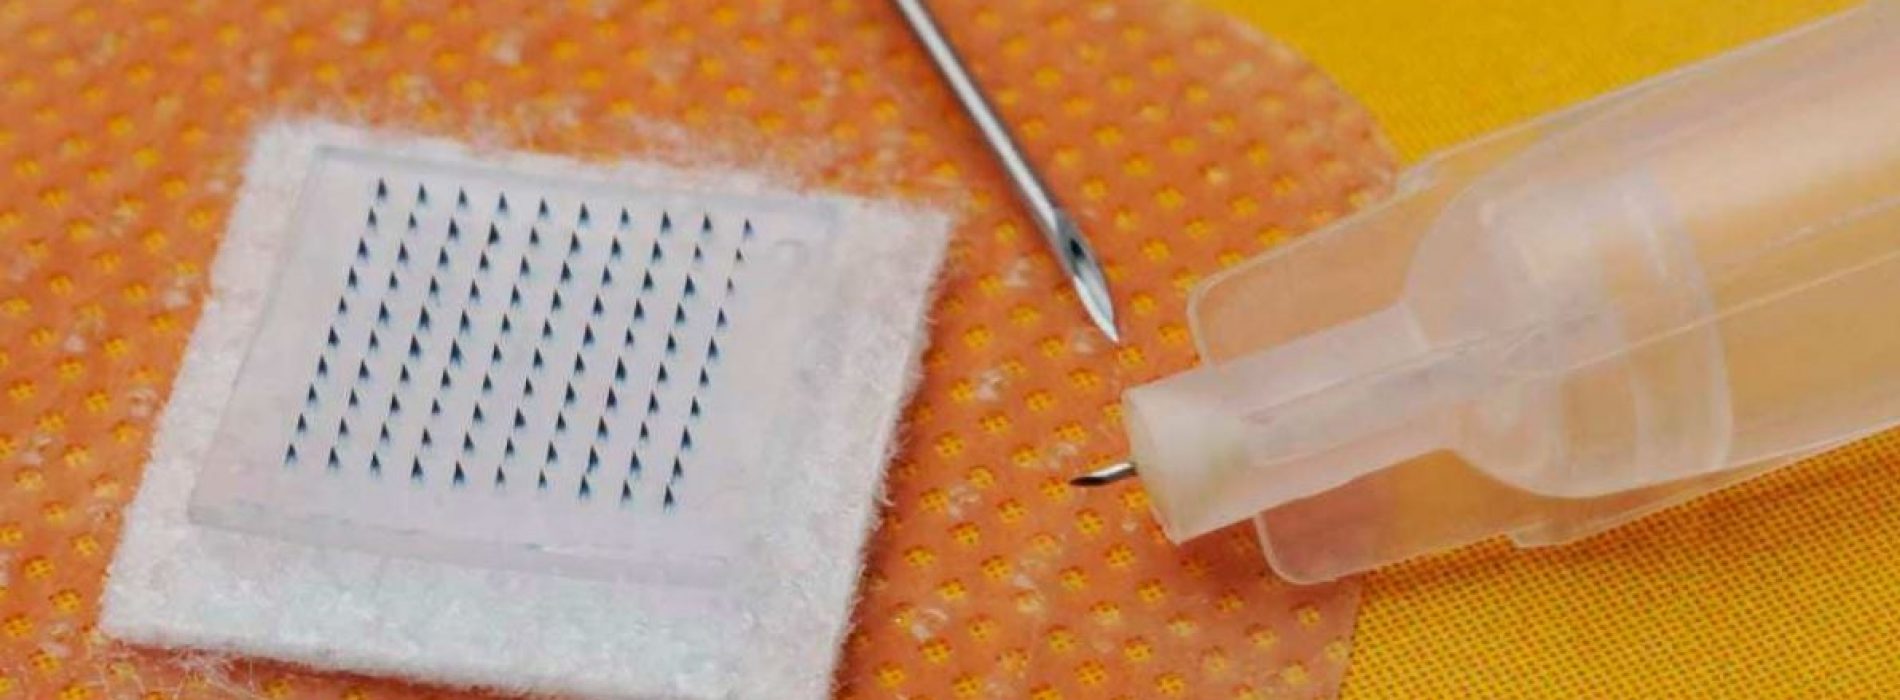 Swansea University ontwikkelt micronaald Smart Patch COVID-vaccin dat reacties van patiënten kan volgen